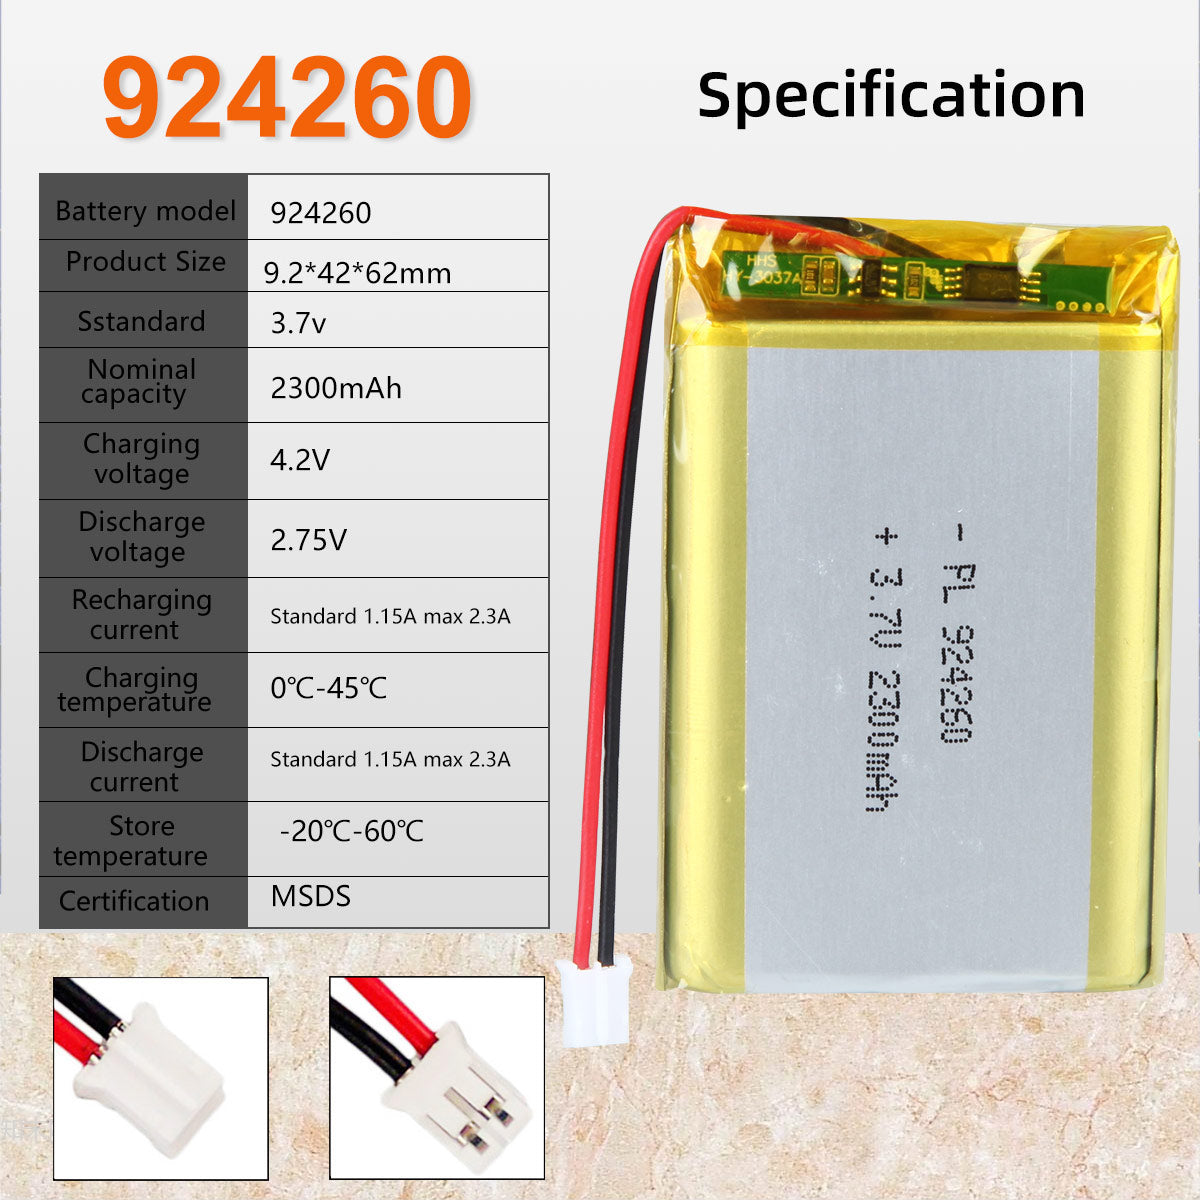 3.7V 2300mAh 924260 Batterie Lithium Polymère Rechargeable Longueur 62mm